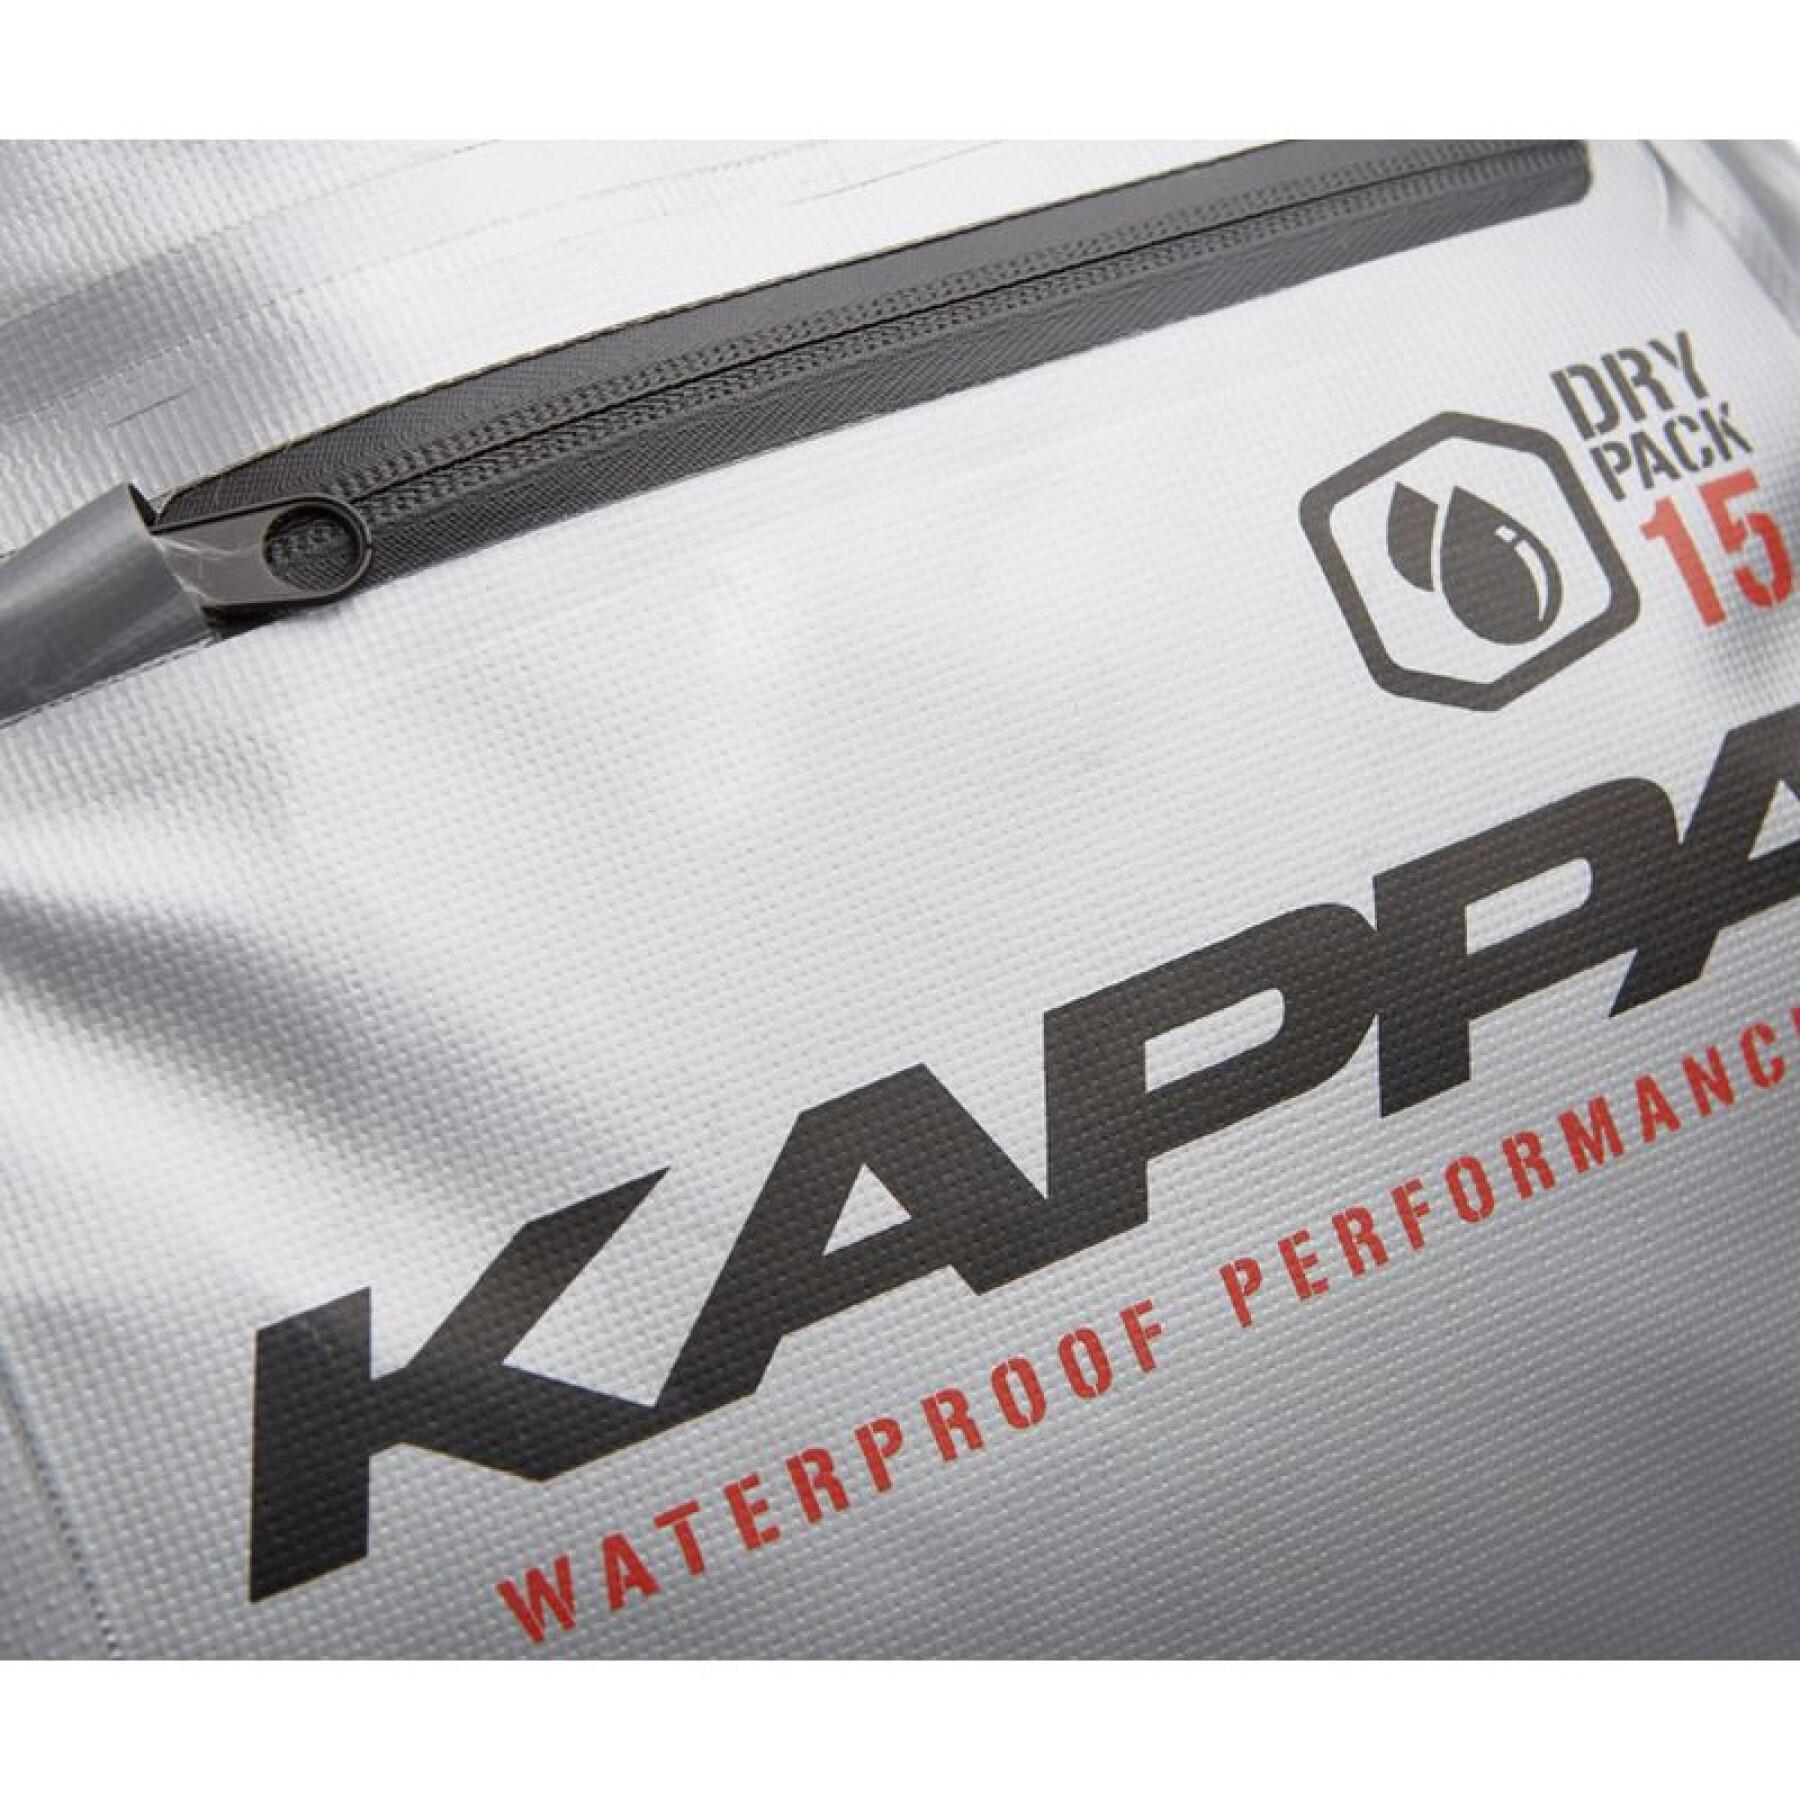 Wasserdichte Tunneltasche für Scooter Kappa WA407S DRY PACK